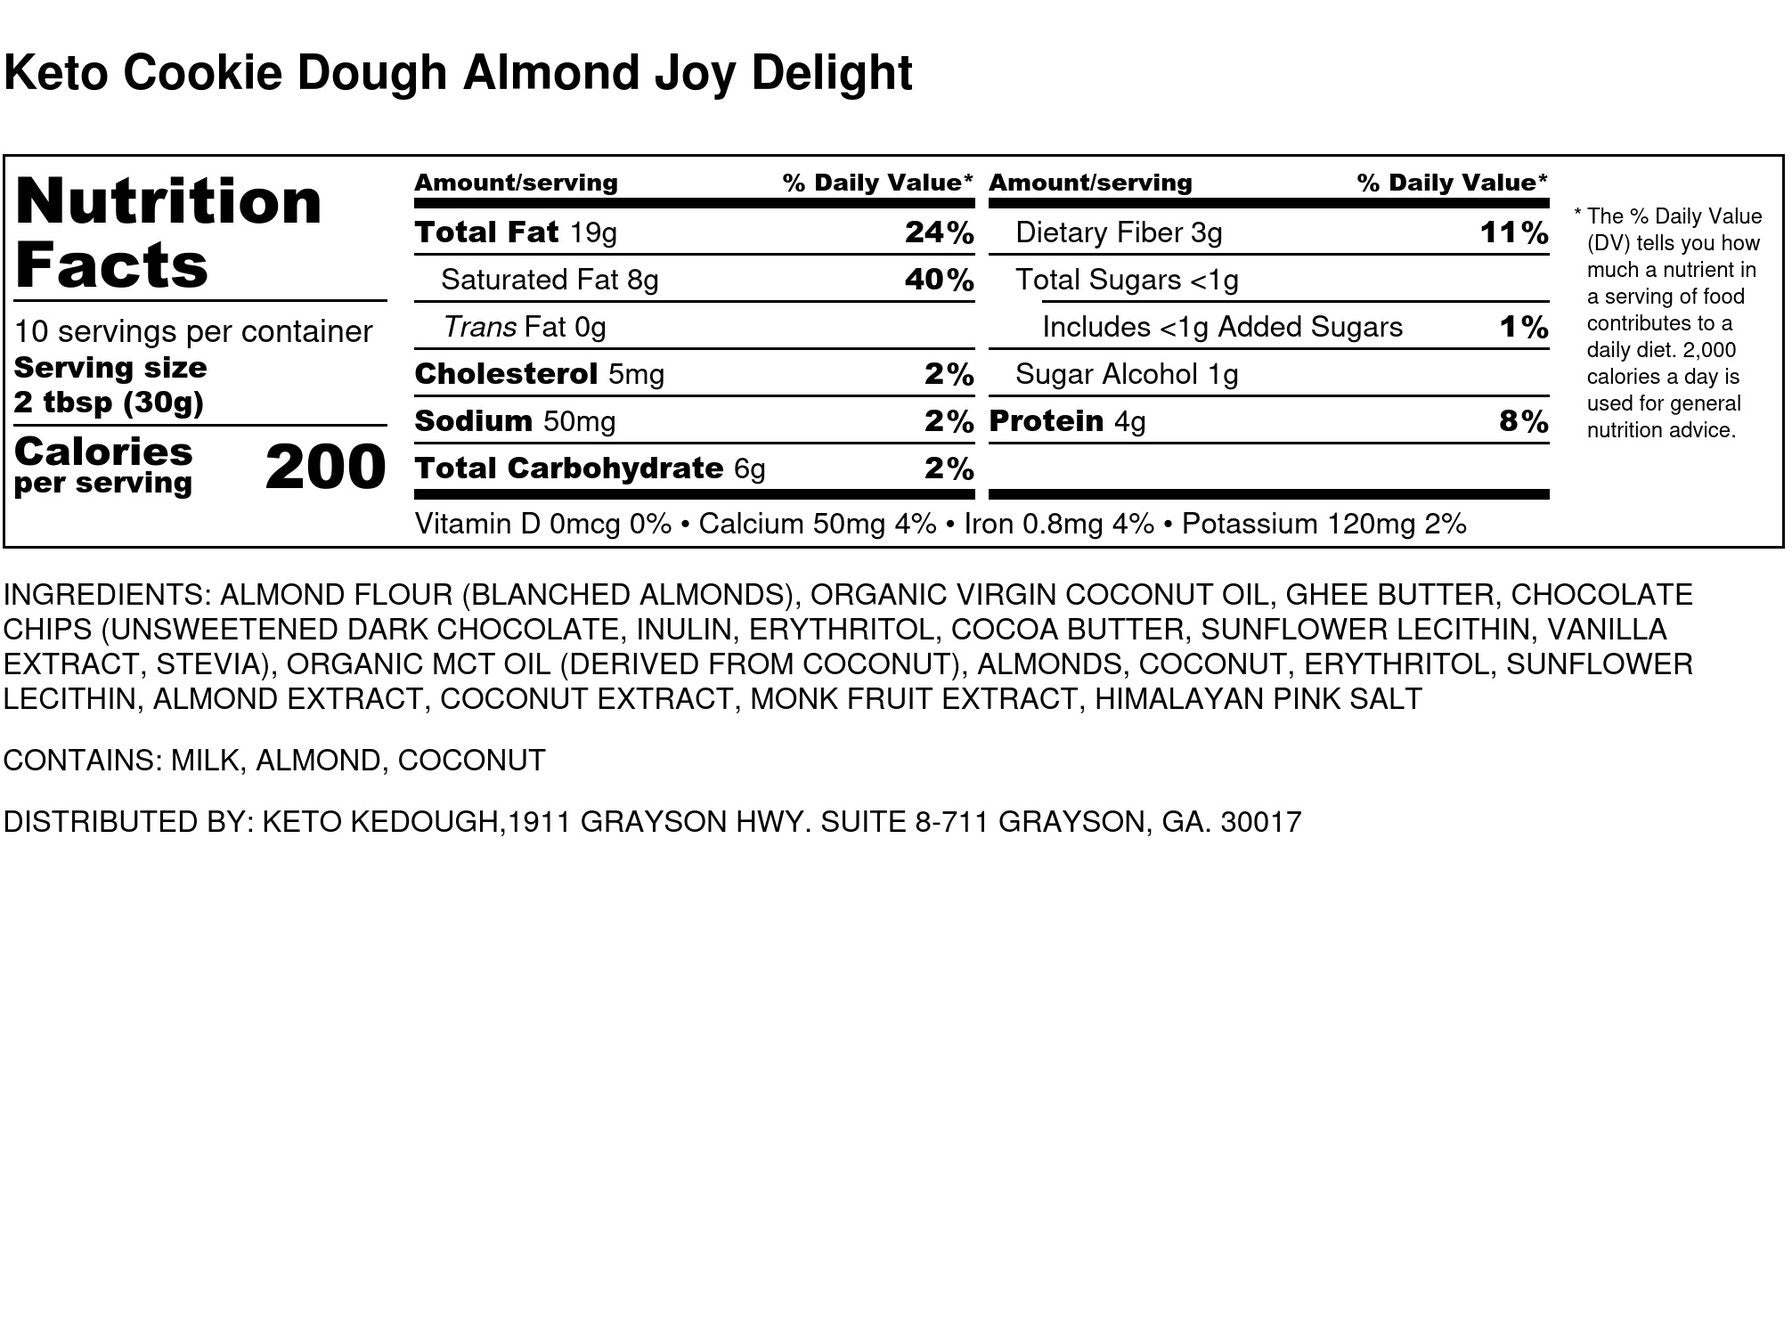 Keto Almond Joy Delight | Edible Cookie Dough | Keto Kedough